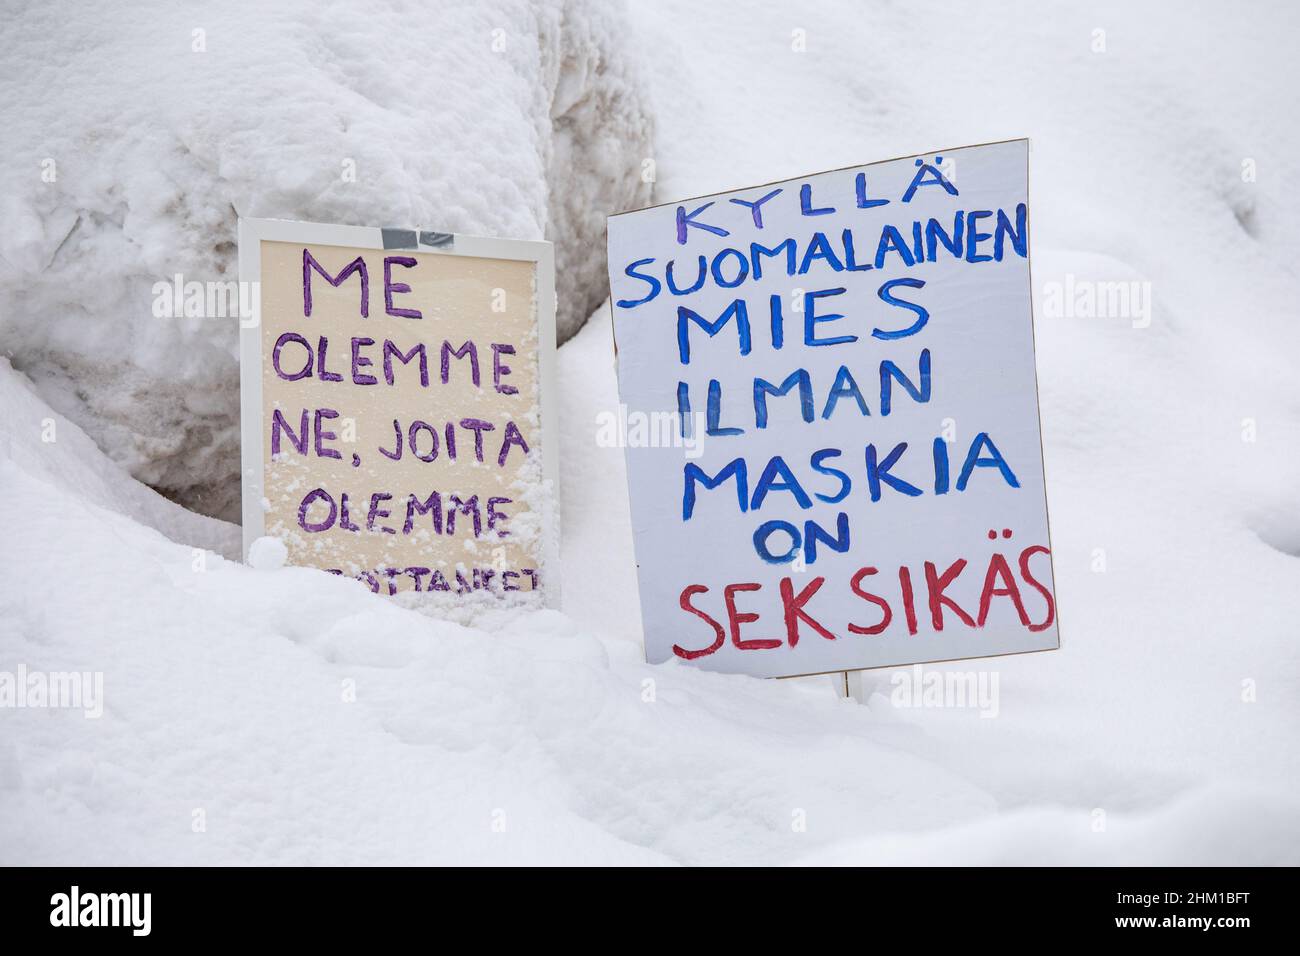 Kyllä suomalainen mies ilman maskia sur seksikäs. Le convoi de liberté de Finlande signe sur la pile de neige à Helsinki, en Finlande. Banque D'Images